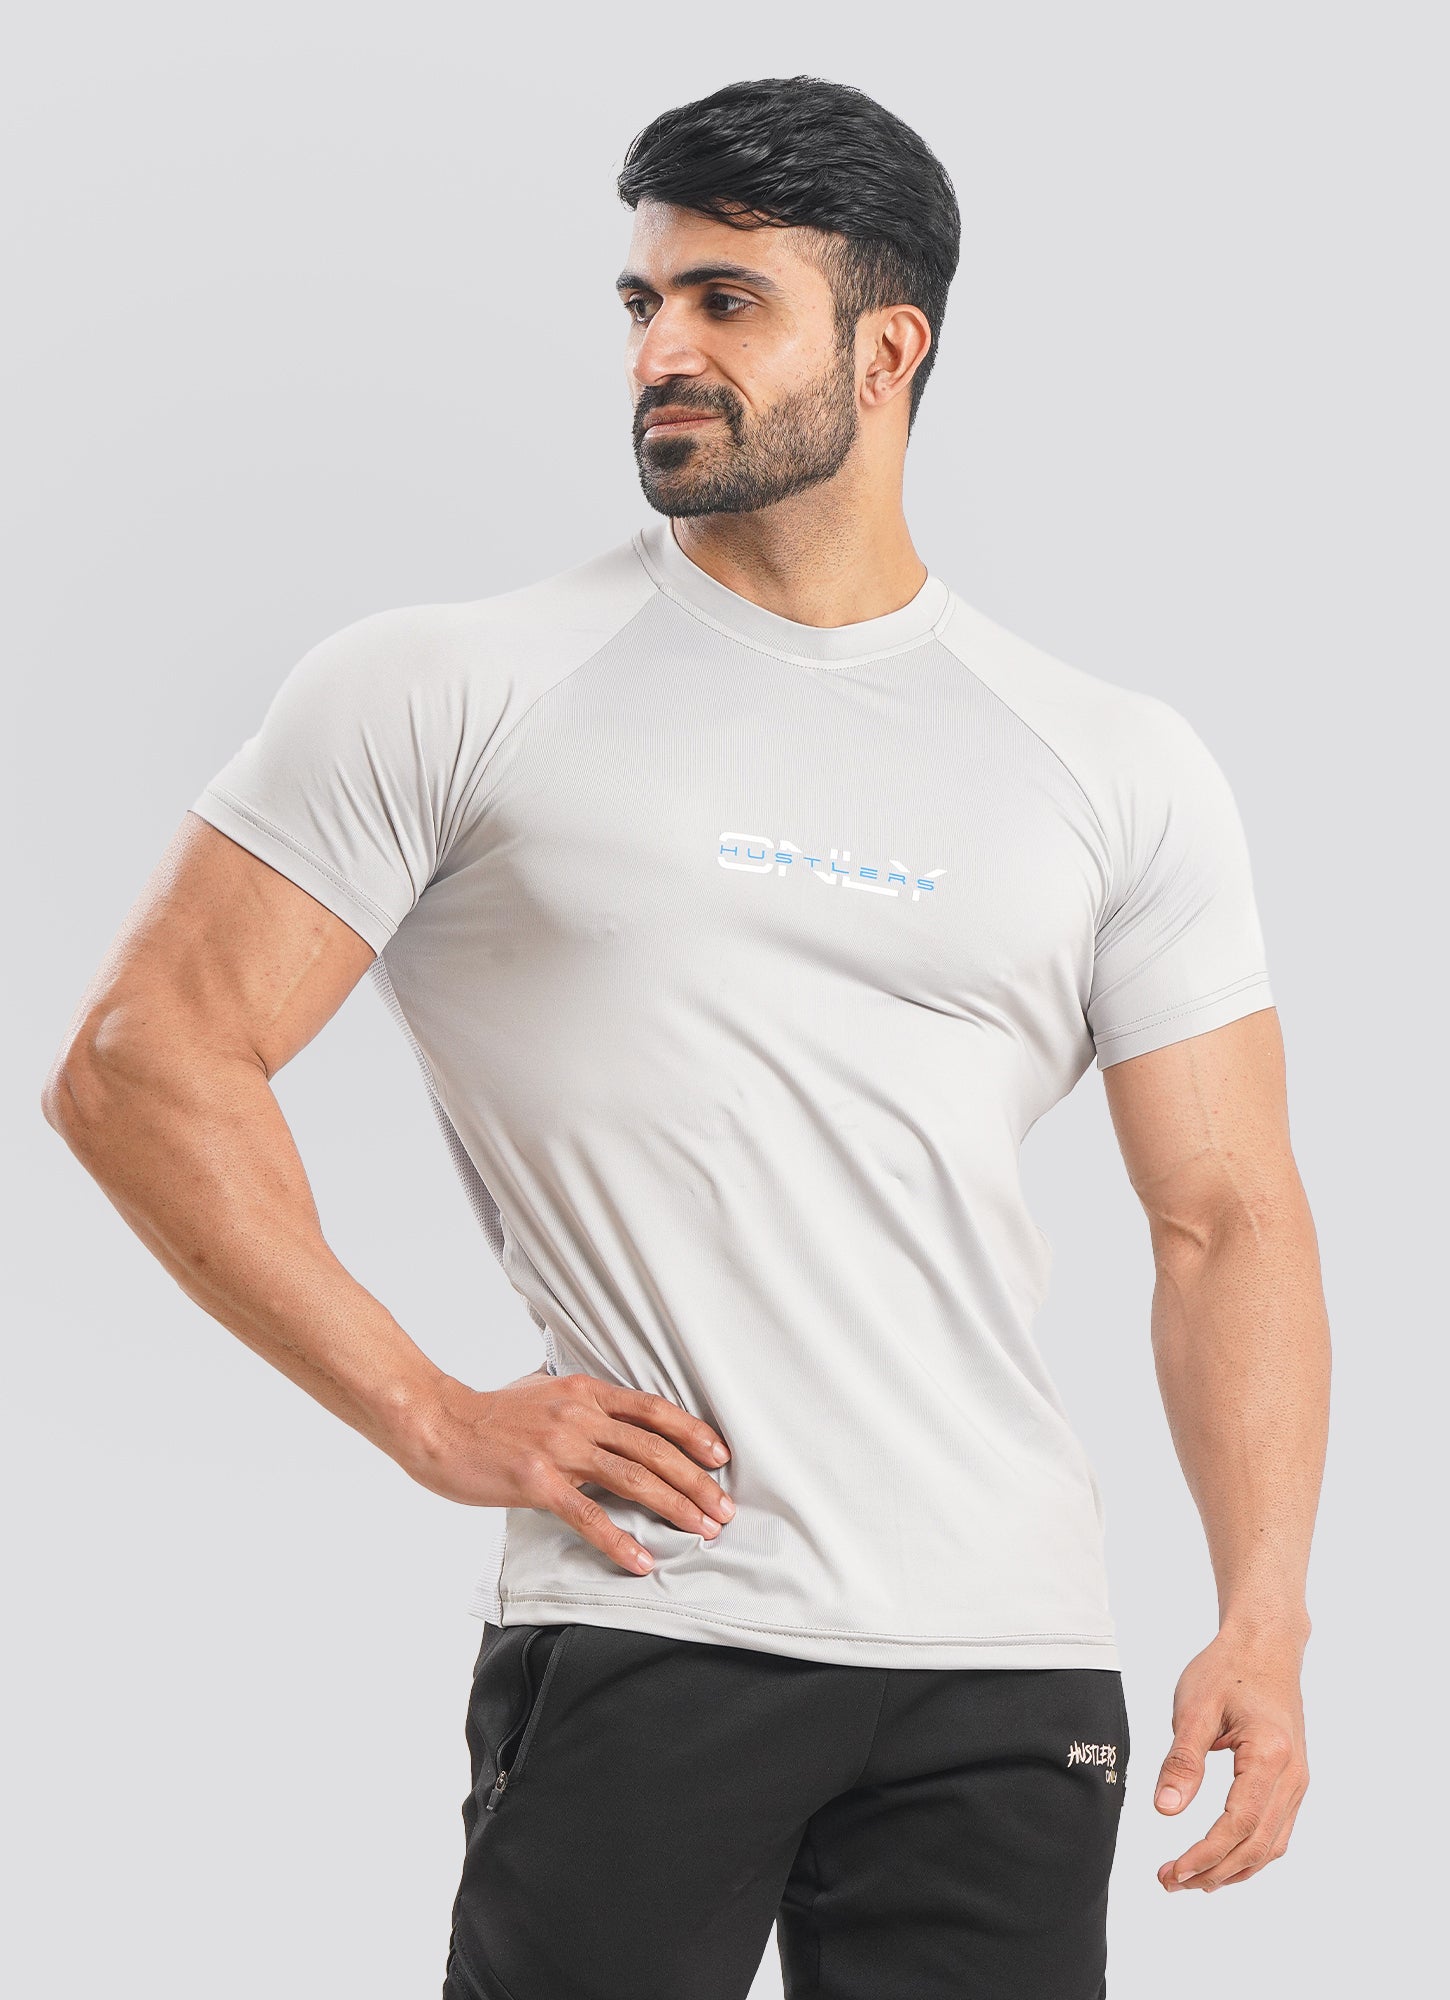 Utility Mesh Back Gray Tshirt for Mens | HustlersOnlyPK